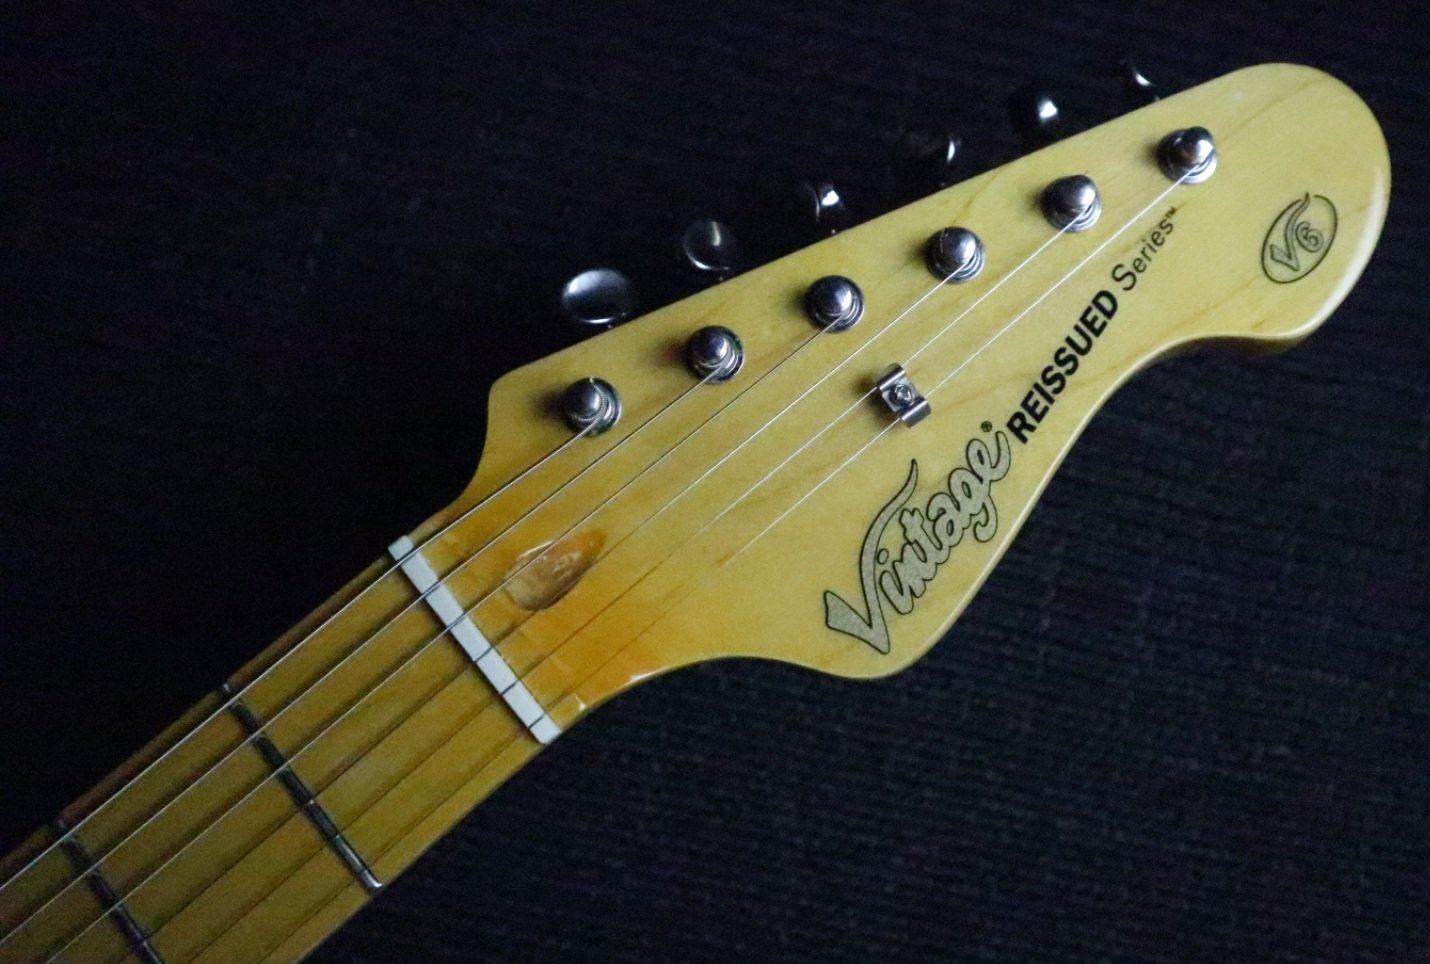 Vintage* V6M SSB Sunburst Electric Guitar, Electric Guitar for sale at Richards Guitars.